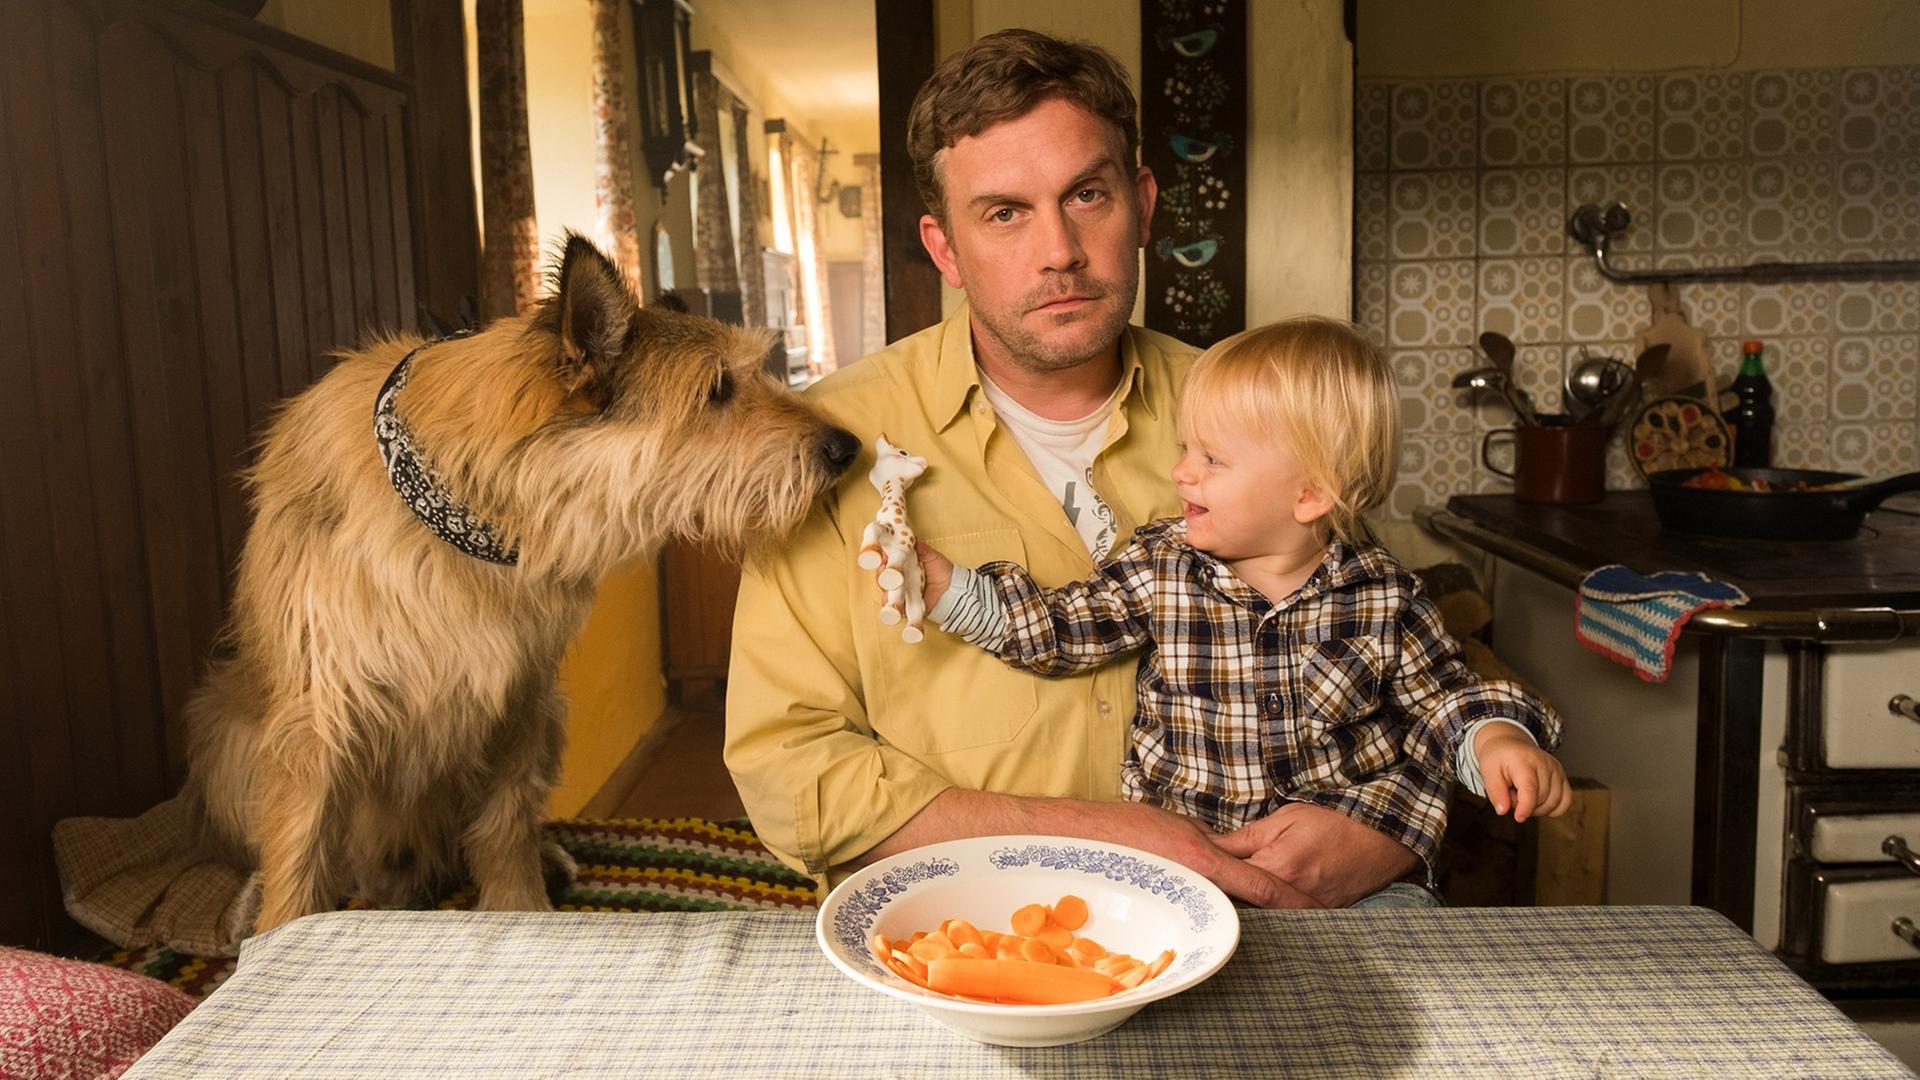 Szene aus dem Film "Leberkäsjunkie": Dorfpolizist Franz Eberhofer (Sebastian Bezzel) sitzt in seiner Küche am Esstisch, auf dem Schoß ein kleines Kind, daneben ein Hund.